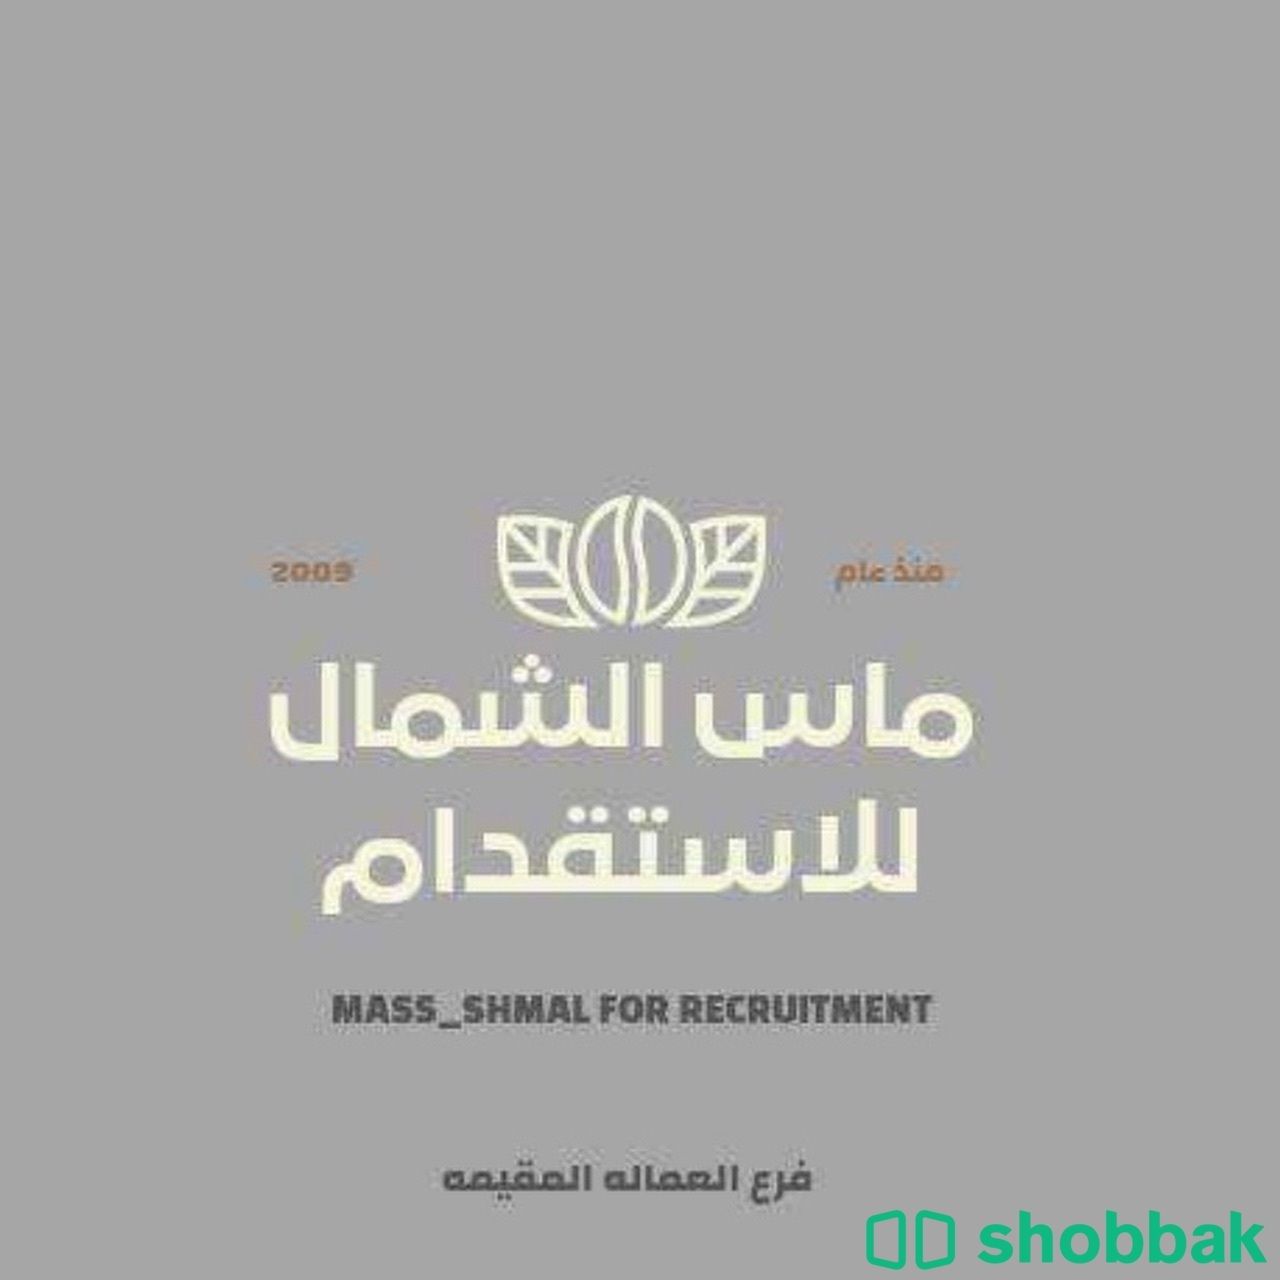 مكتب ماس الشمال لخدمة العماله المنزليه  Shobbak Saudi Arabia